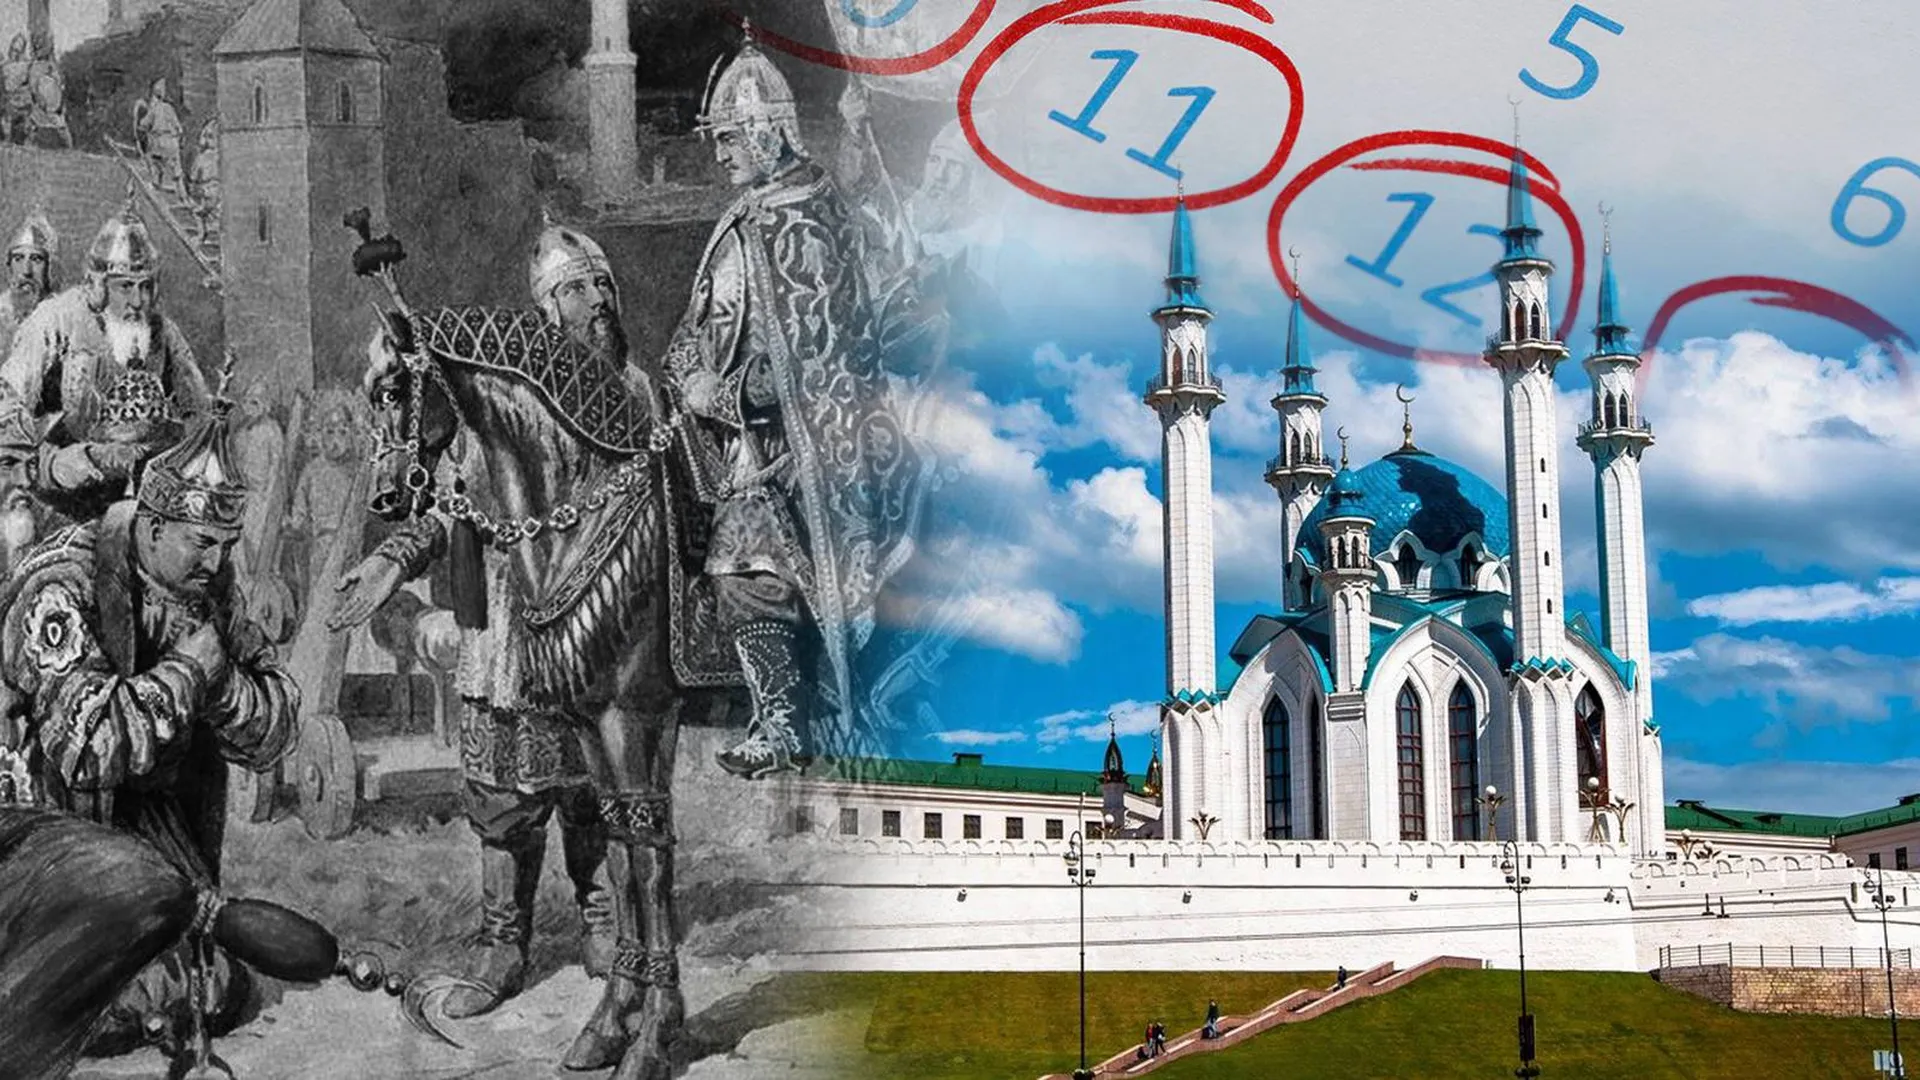 День памяти жертв взятия Казани при Иване IV появился в Татарстане. Это грозит конфликтами с русскими?